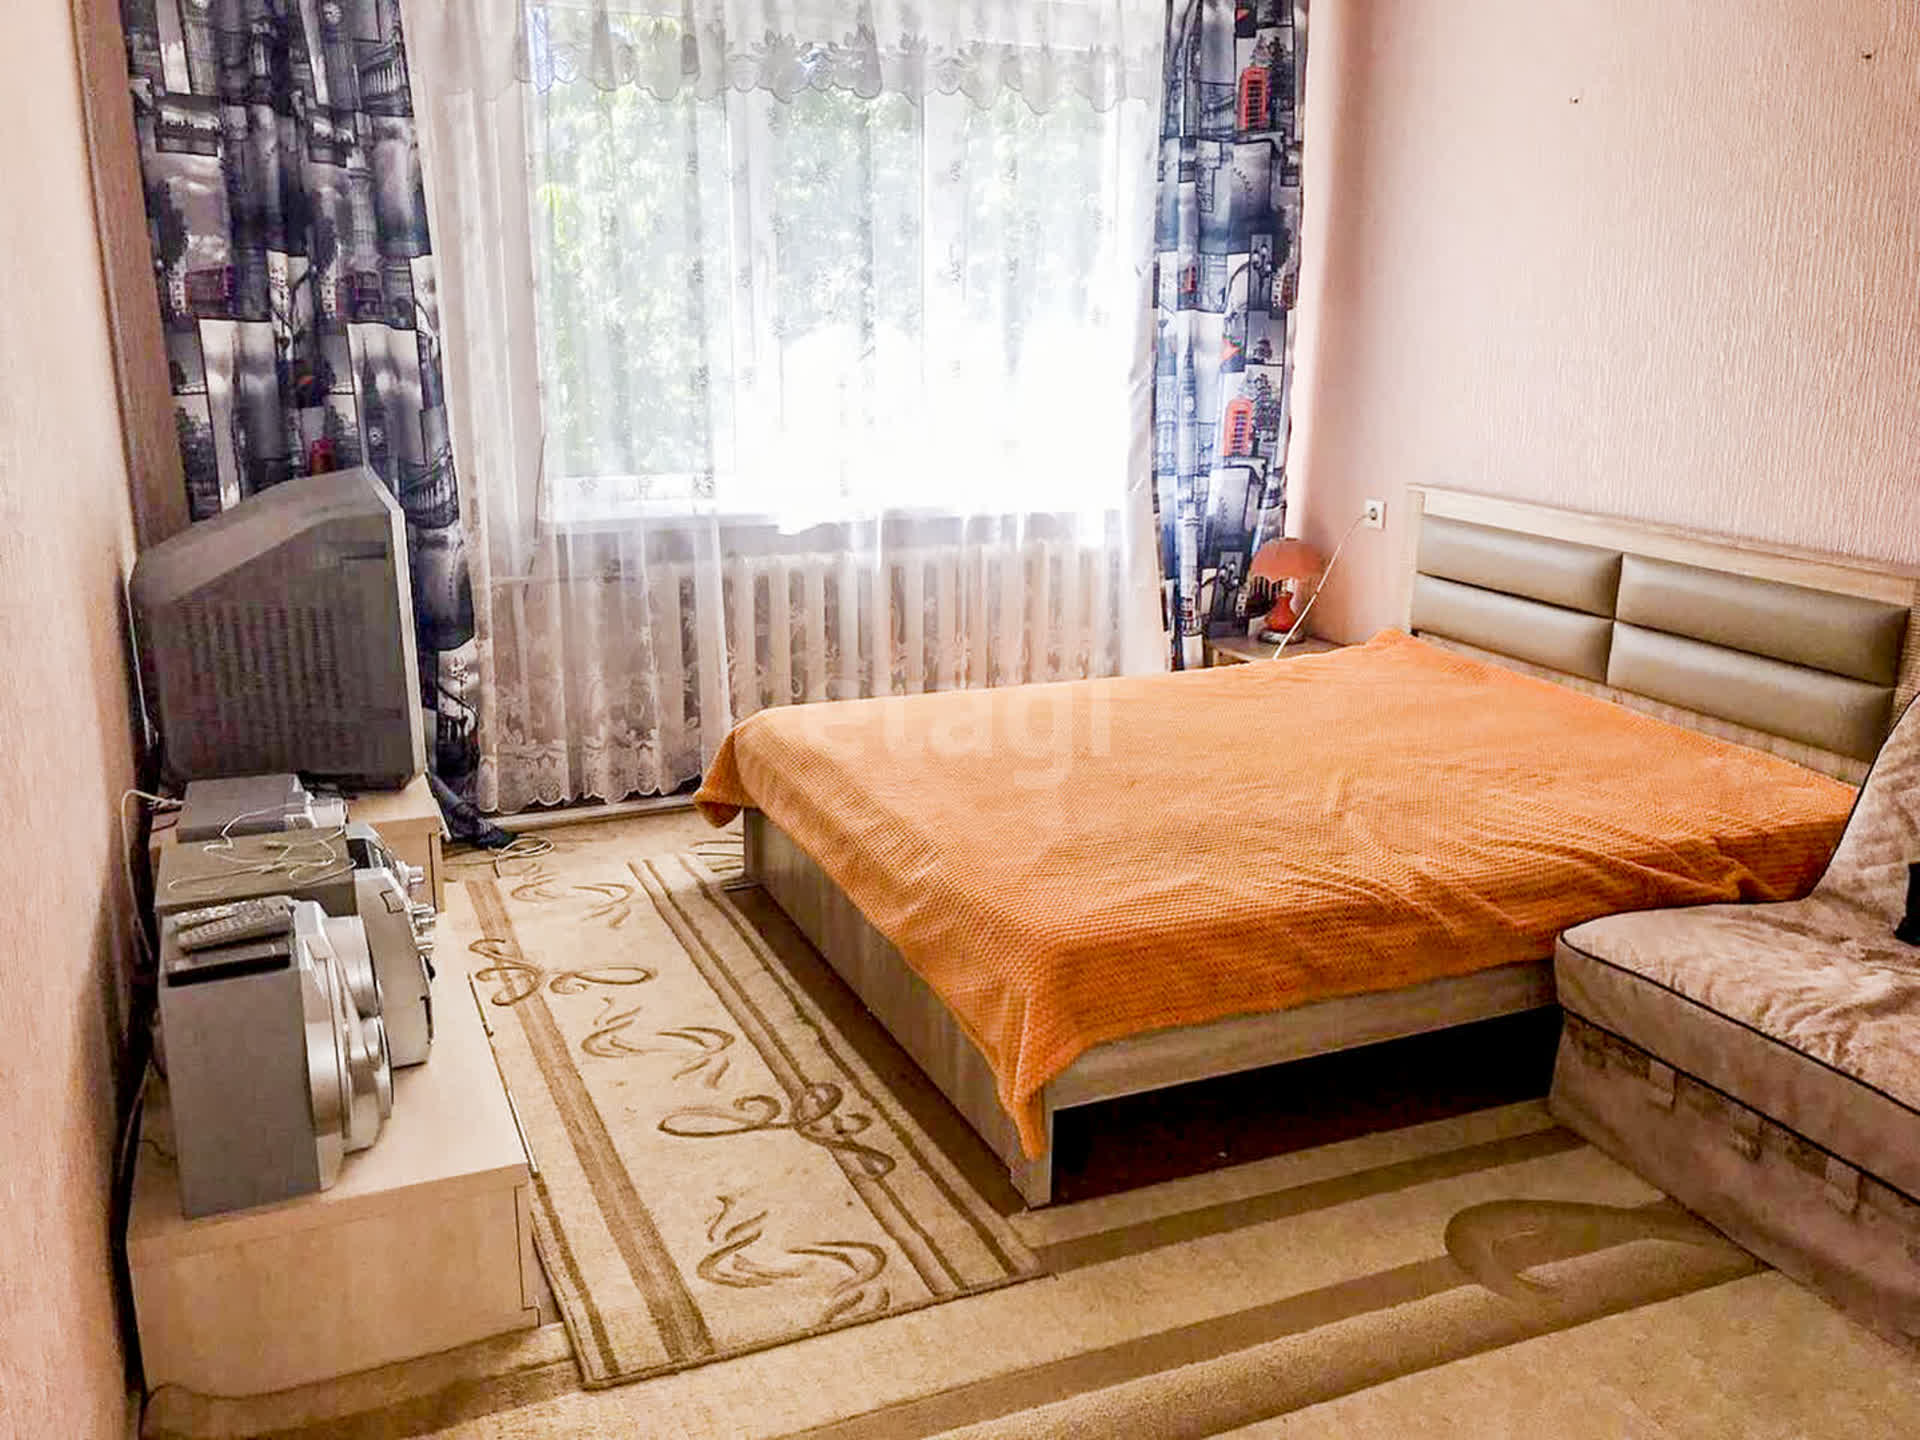 Киевская 167 Симферополь. Купить квартиру в симферополе 1 комнатную недорого